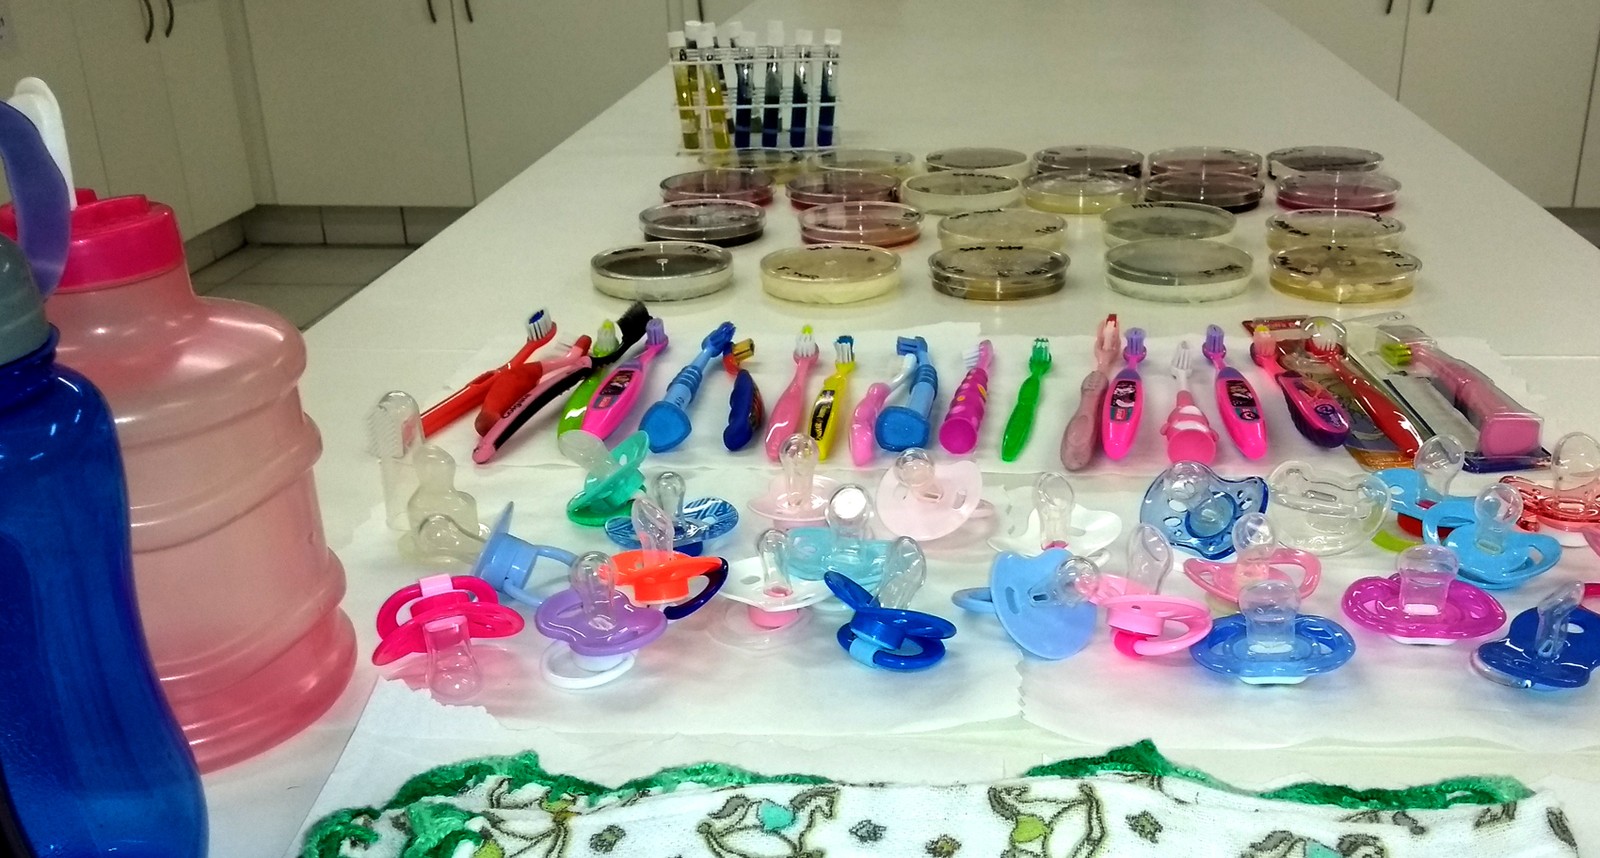 Chupetas, escovas de dente, garrafinhas e 'cheirinhos' foram analisados em pesquisa de Campinas (Foto: Patrícia Teixeira/G1)